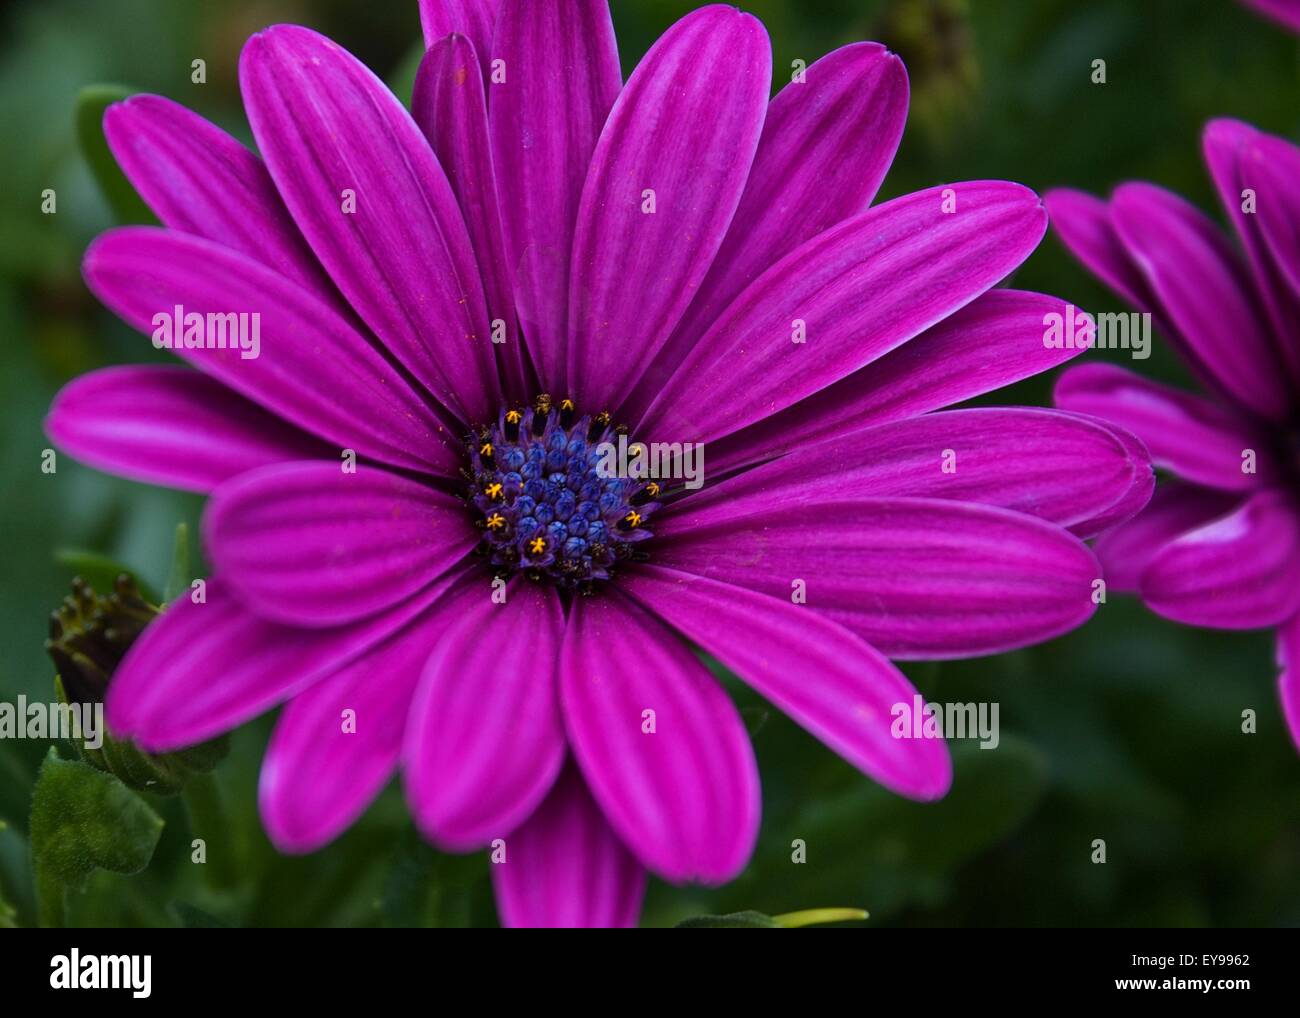 Eine atemberaubende purpurrote Blume in voller Blüte. Stockfoto